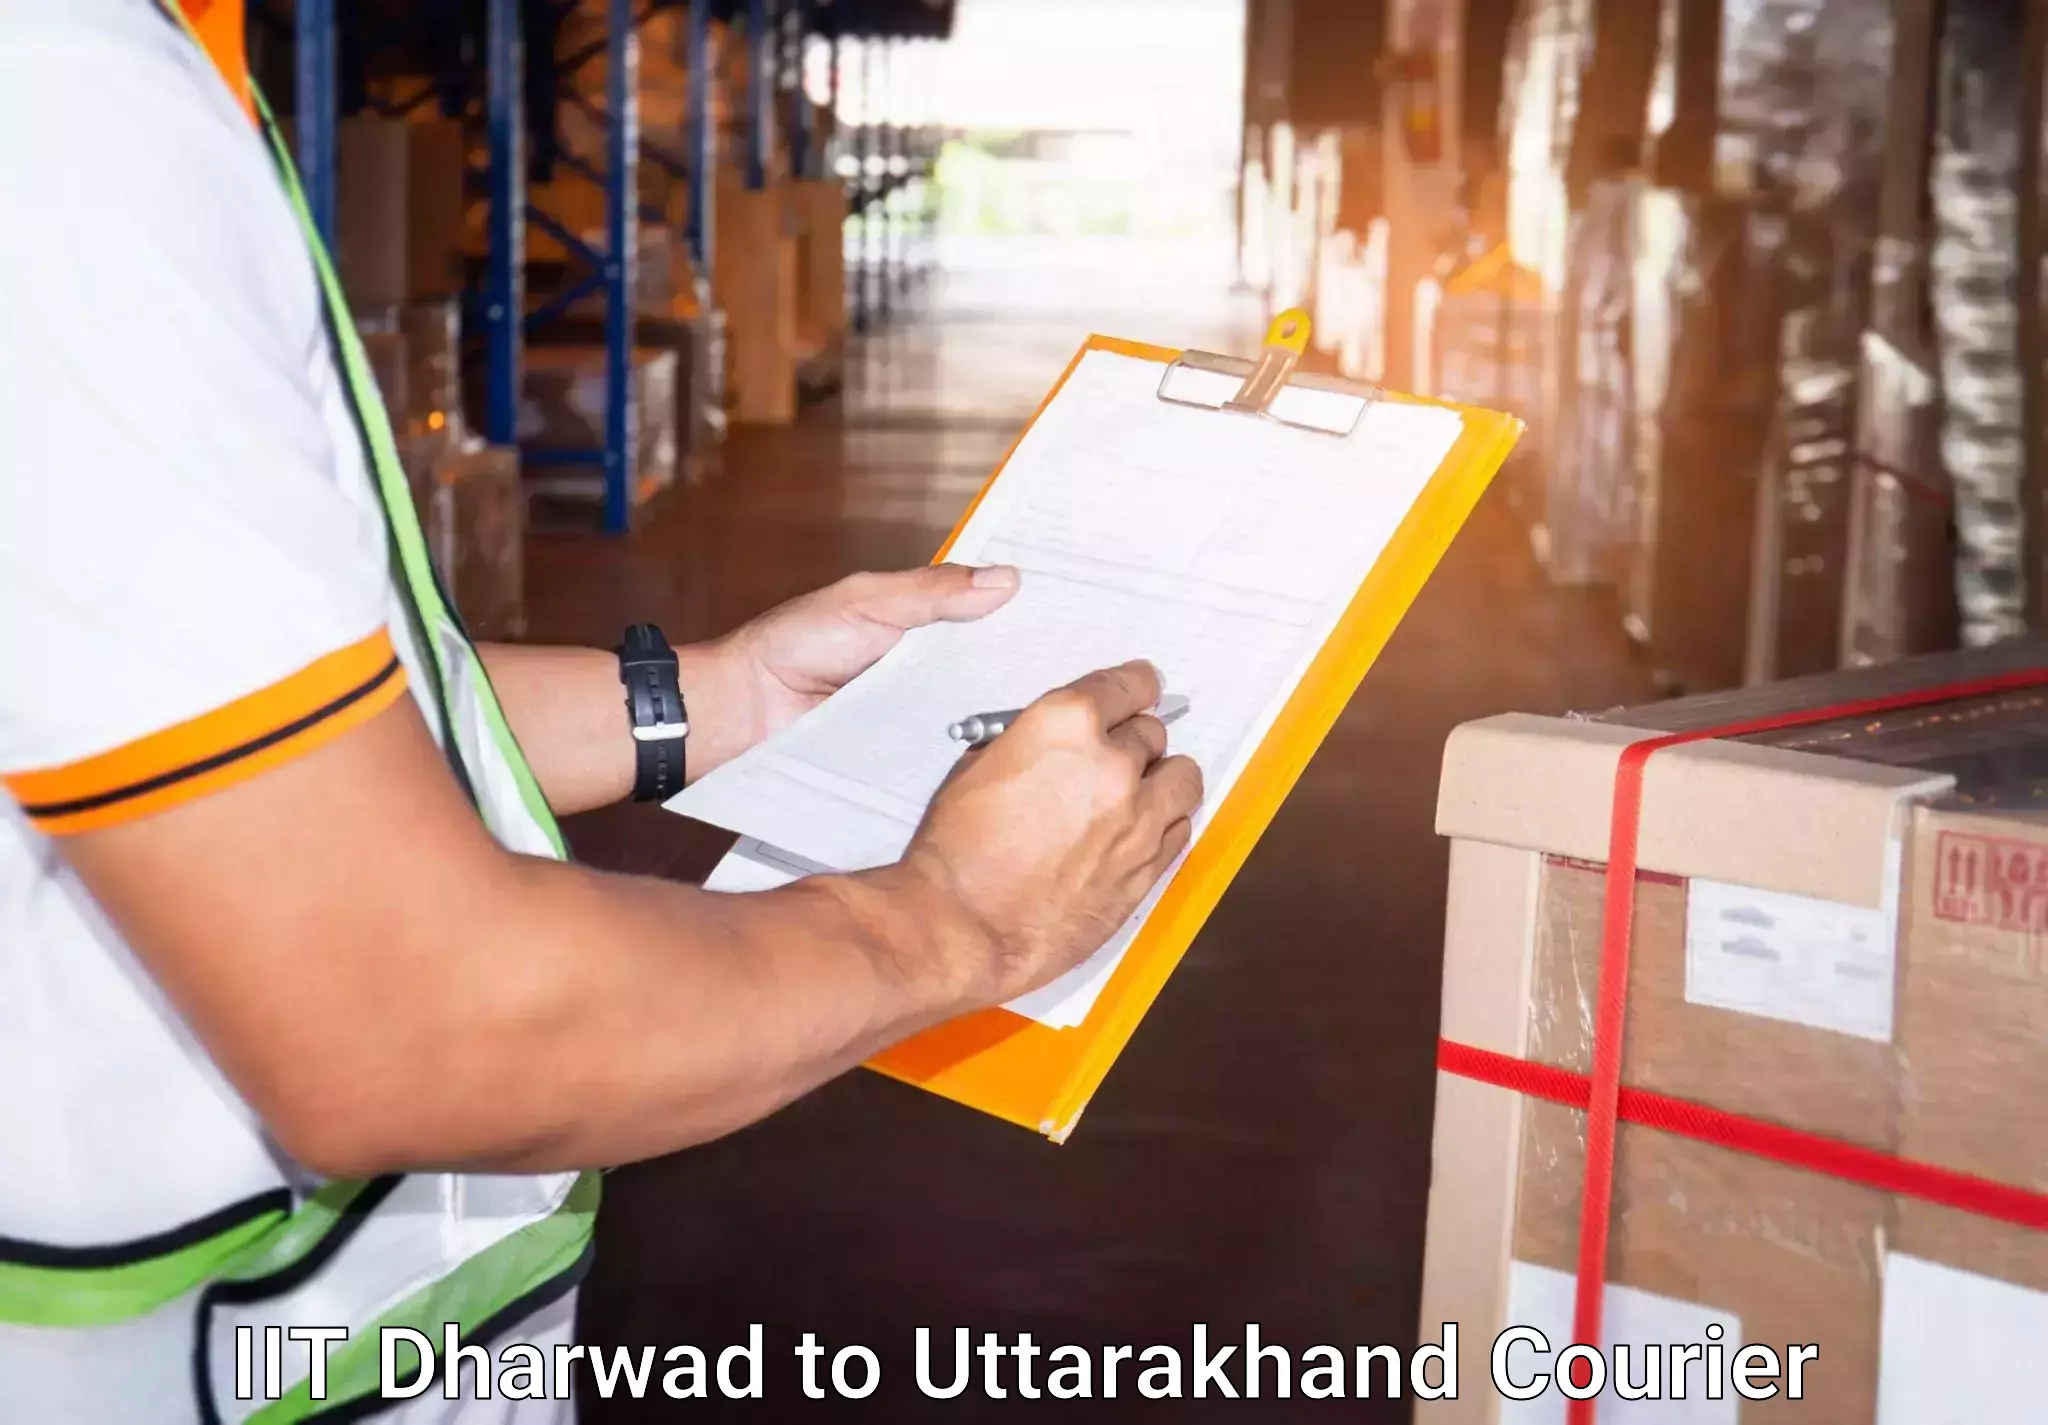 Door-to-door baggage service IIT Dharwad to Dwarahat